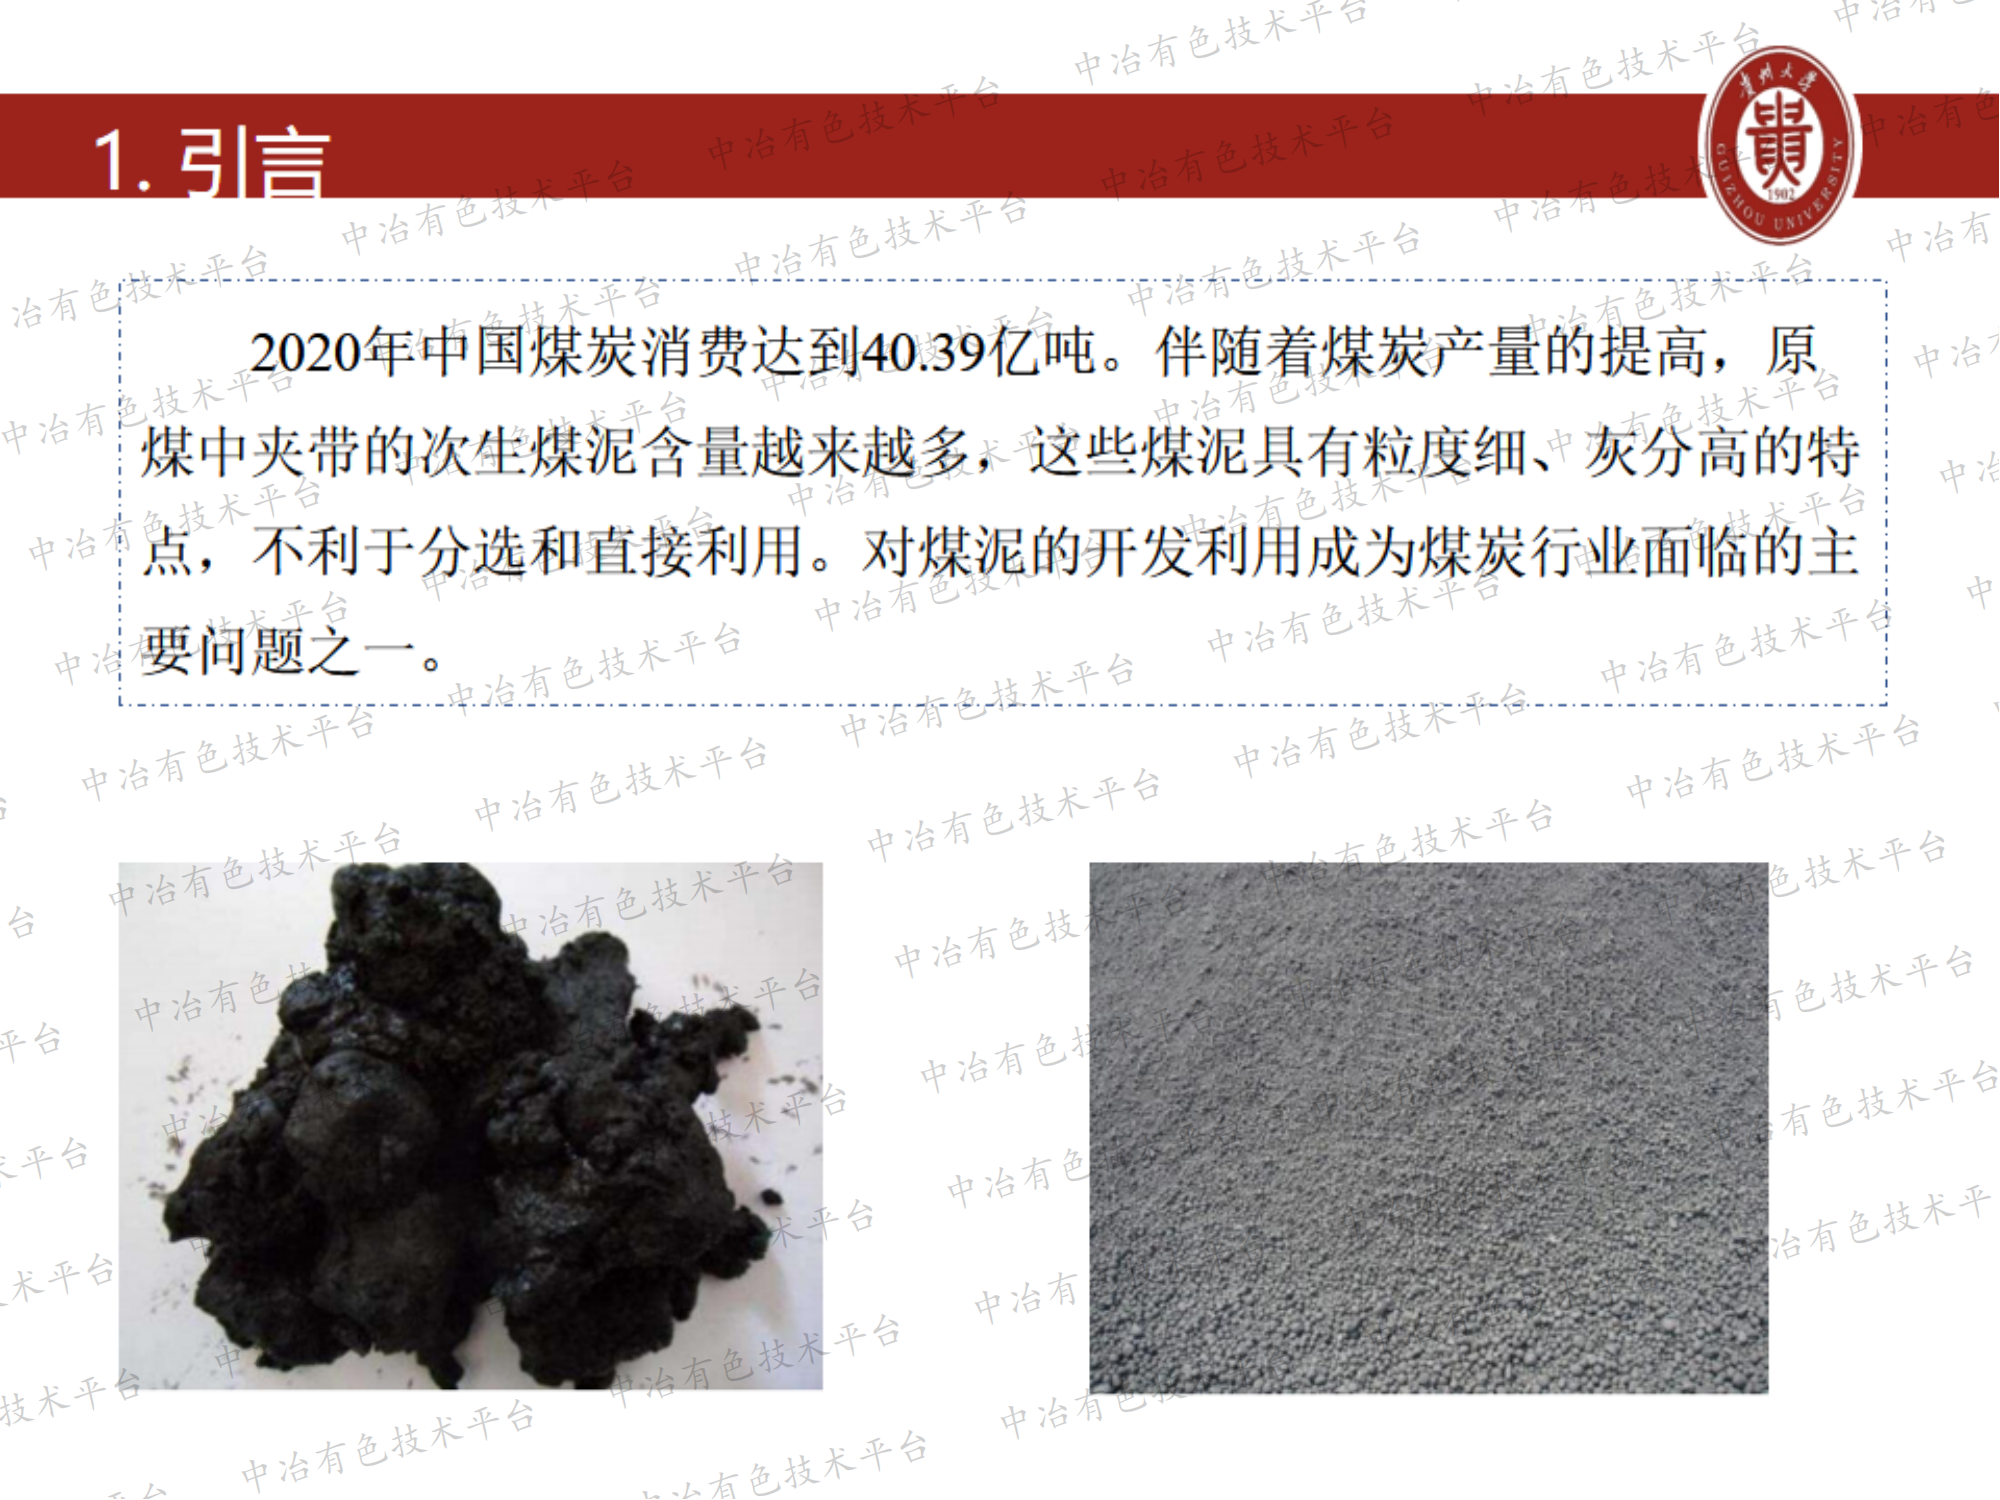 SPS复合型乳化剂与柴油对低阶煤泥浮选协同作用研究